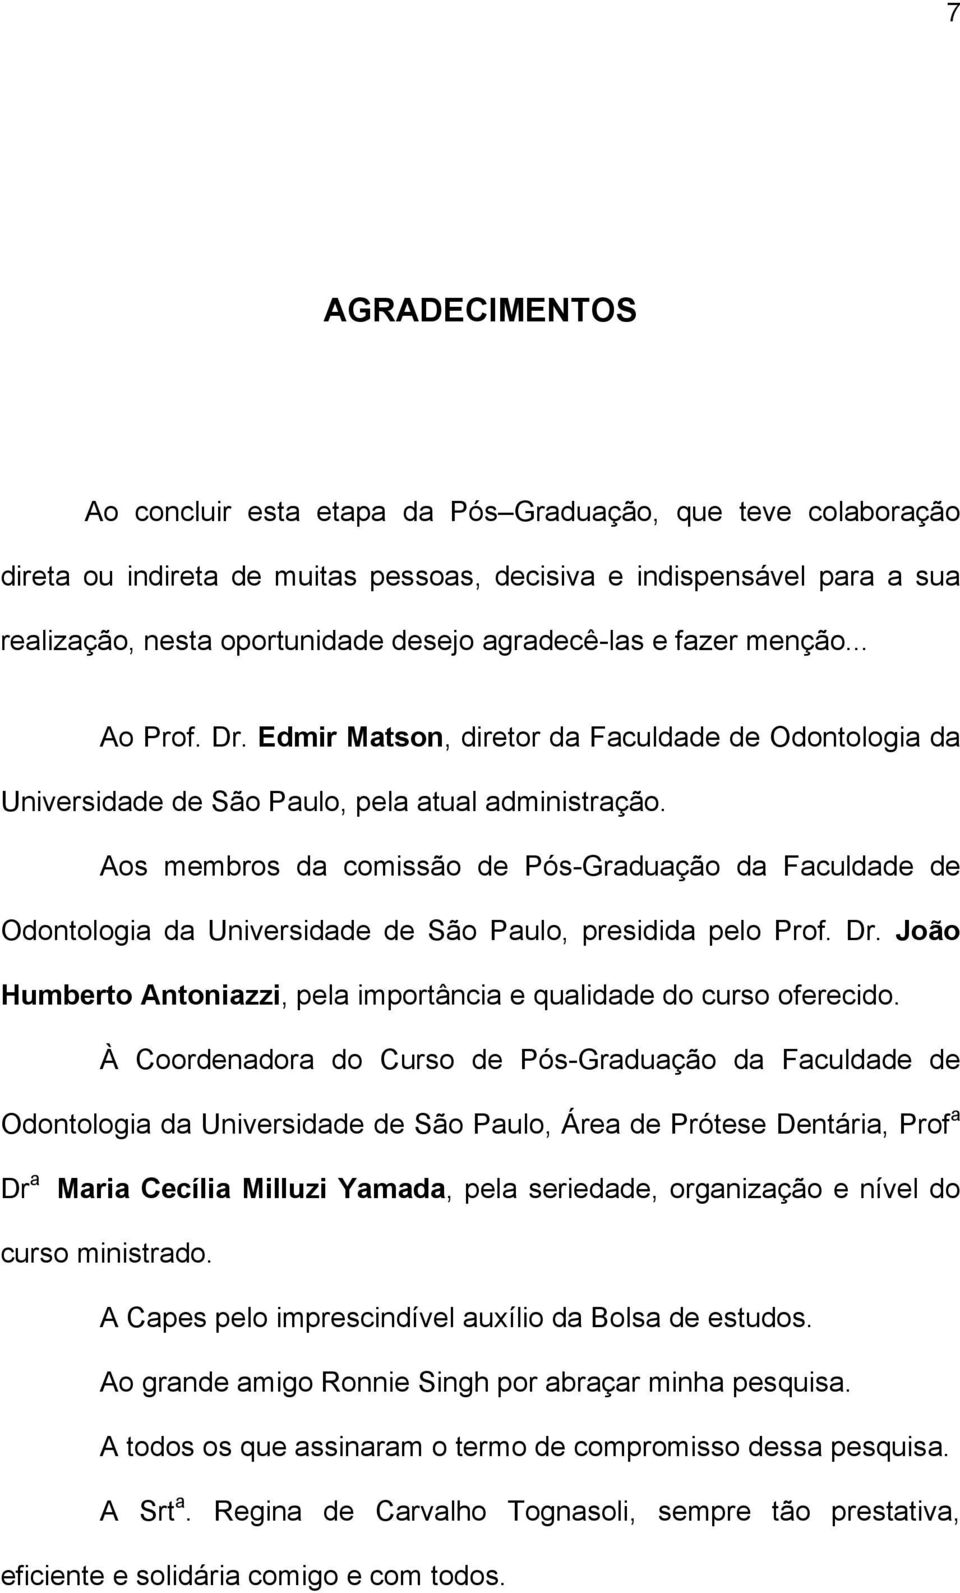 Aos membros da comissão de Pós-Graduação da Faculdade de Odontologia da Universidade de São Paulo, presidida pelo Prof. Dr. João Humberto Antoniazzi, pela importância e qualidade do curso oferecido.